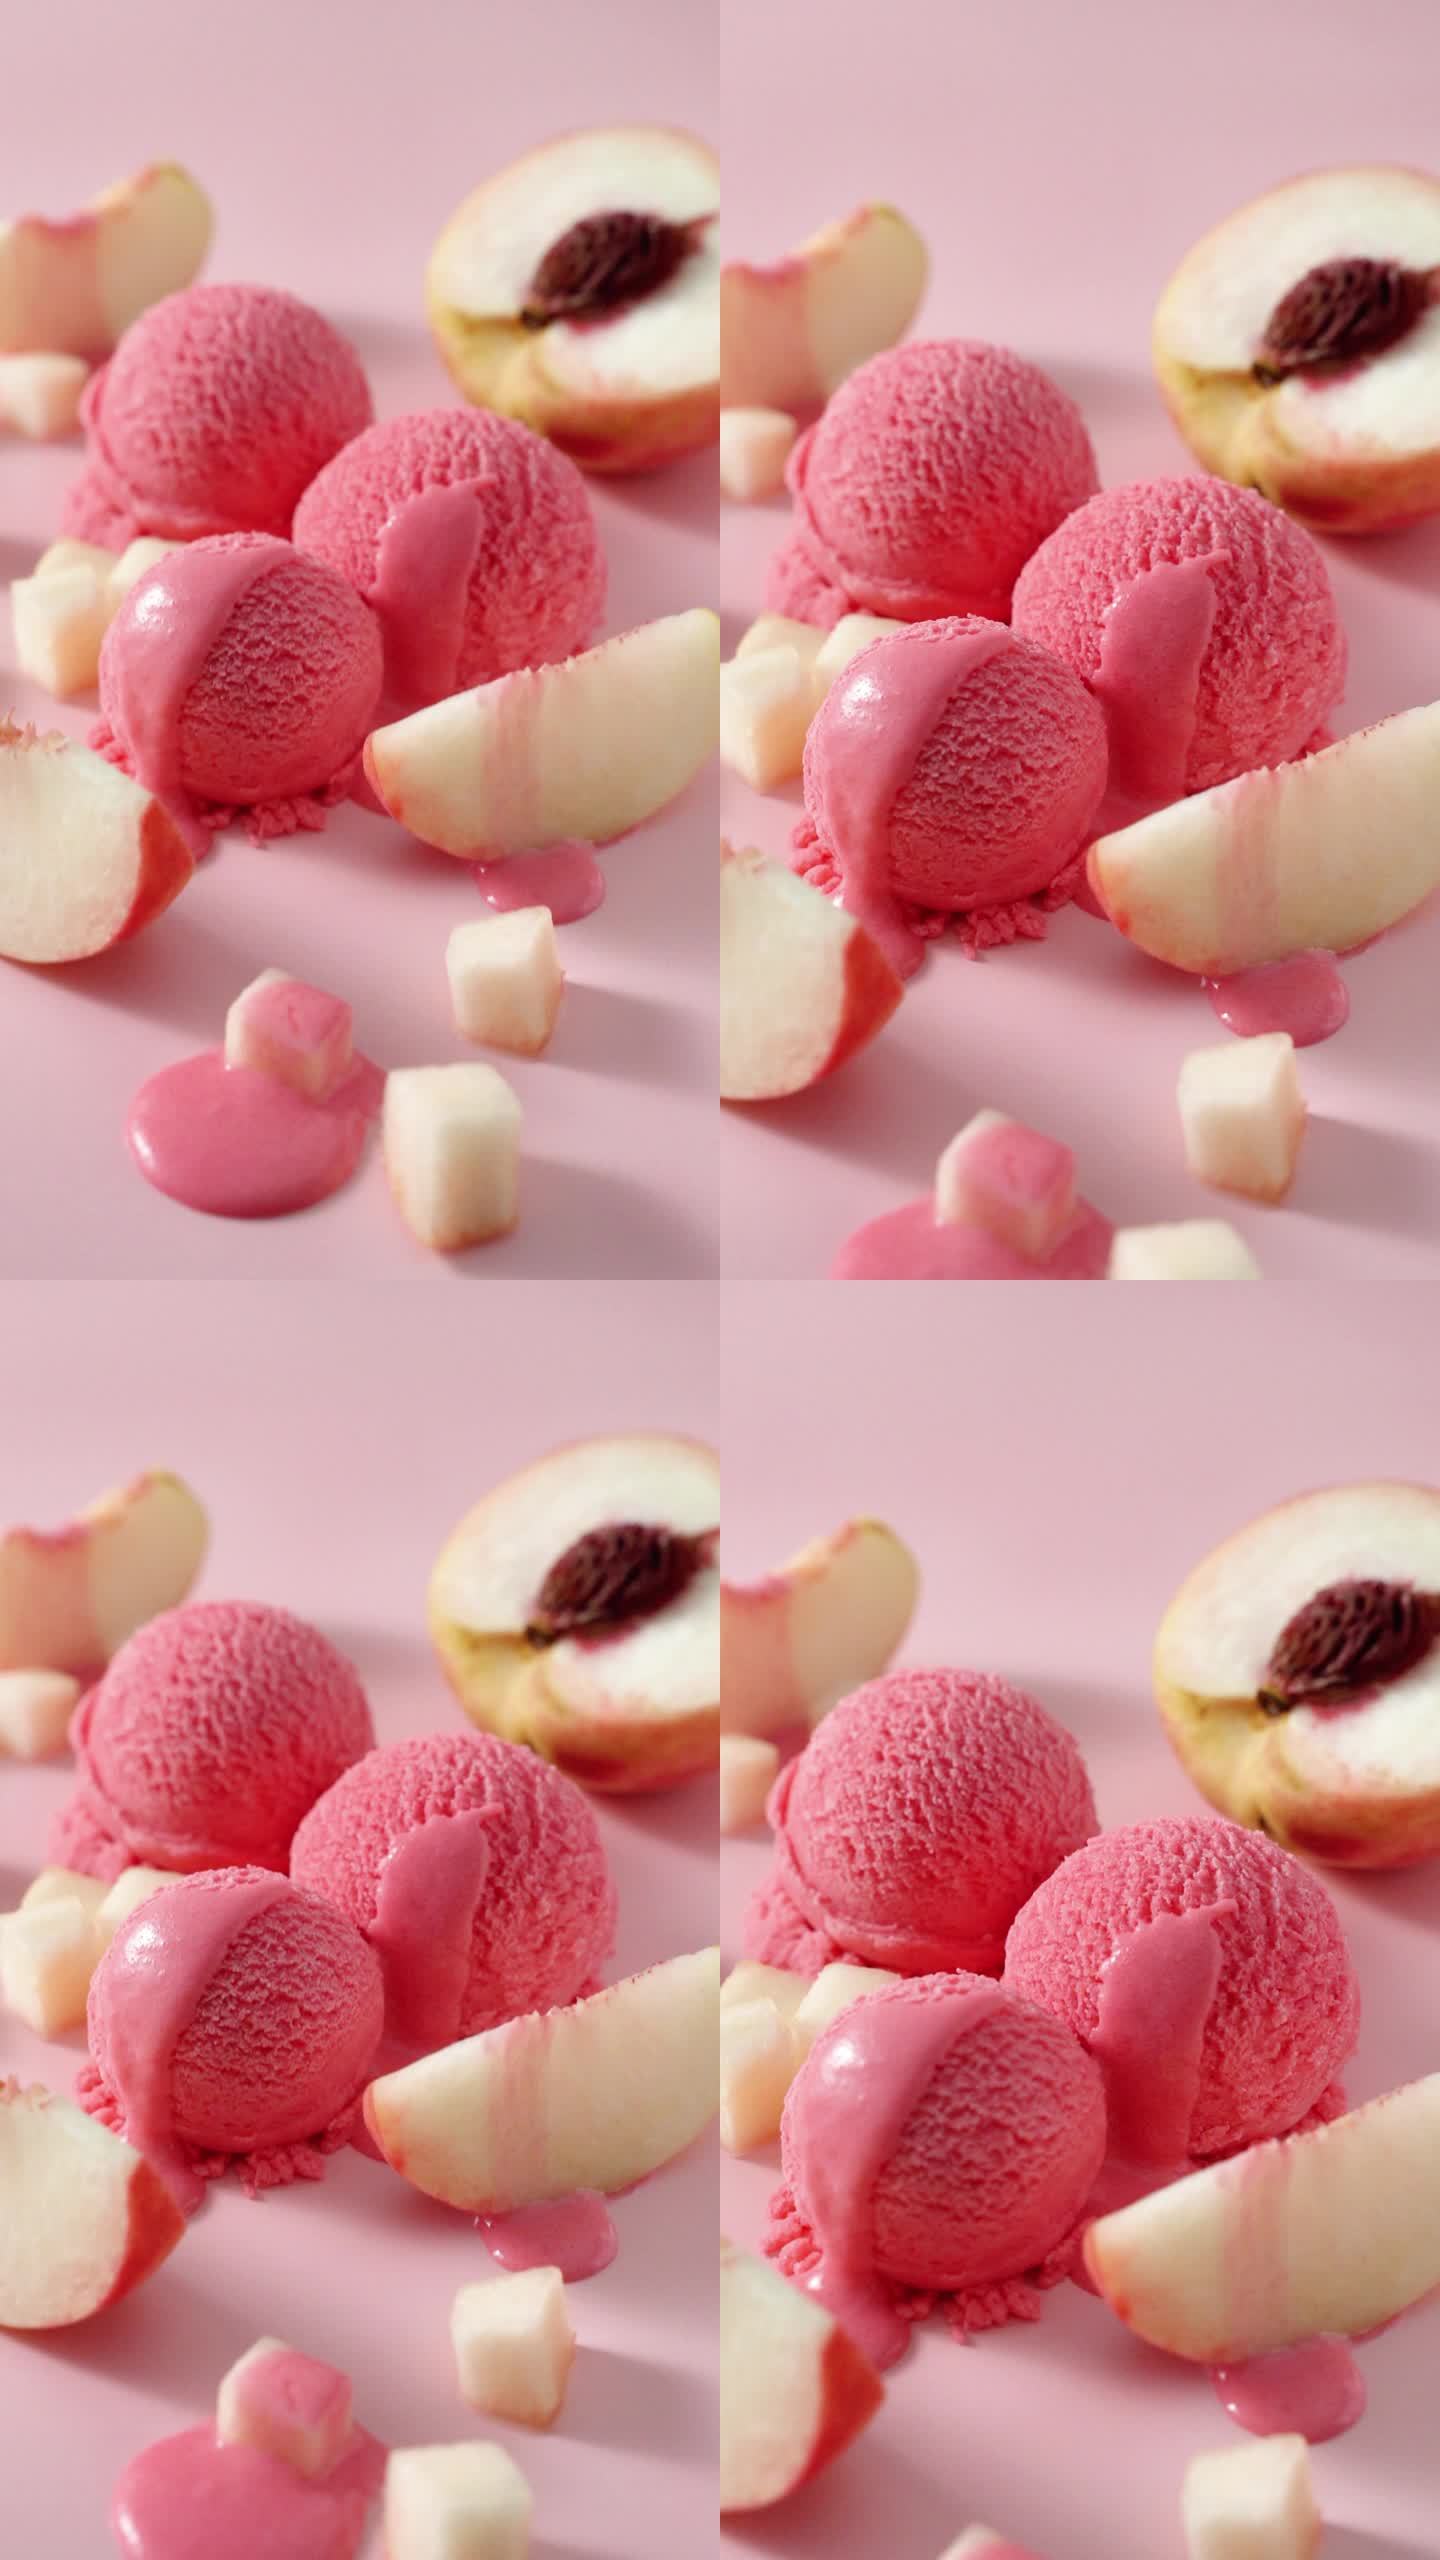 水蜜桃味冰淇淋球广告